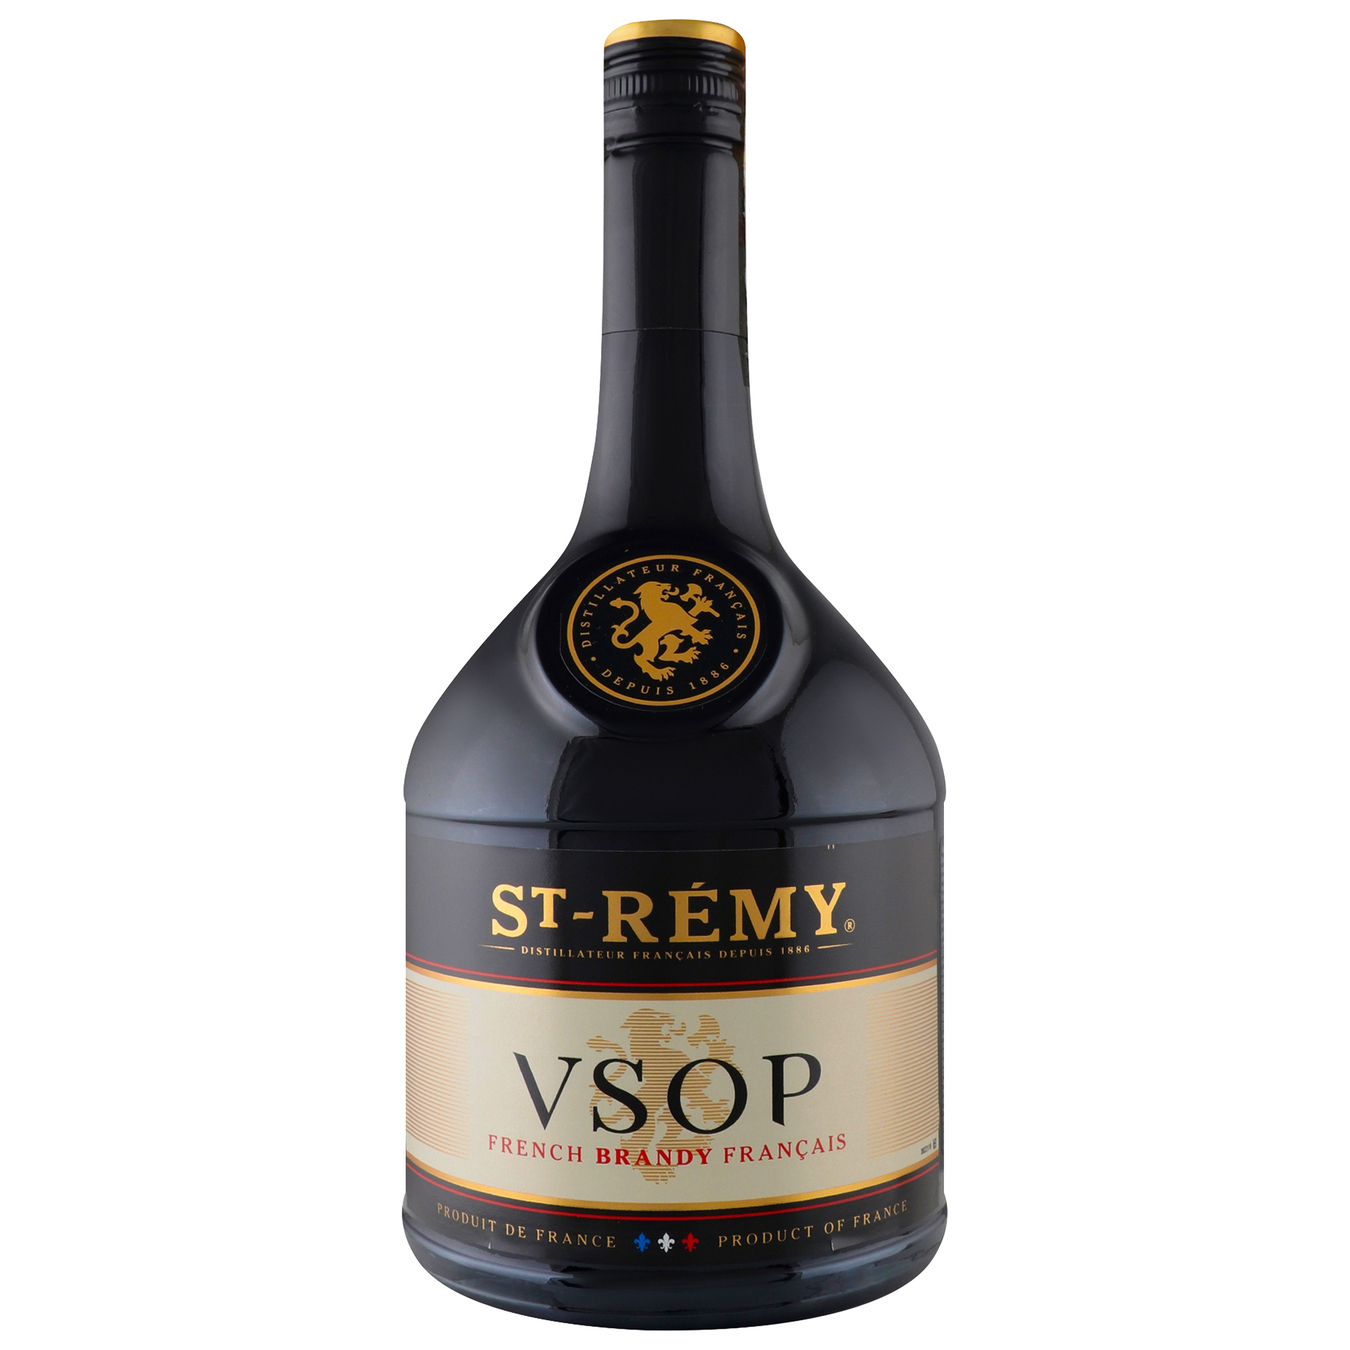 St-Remy VSOP Brandy 40% 0,7l